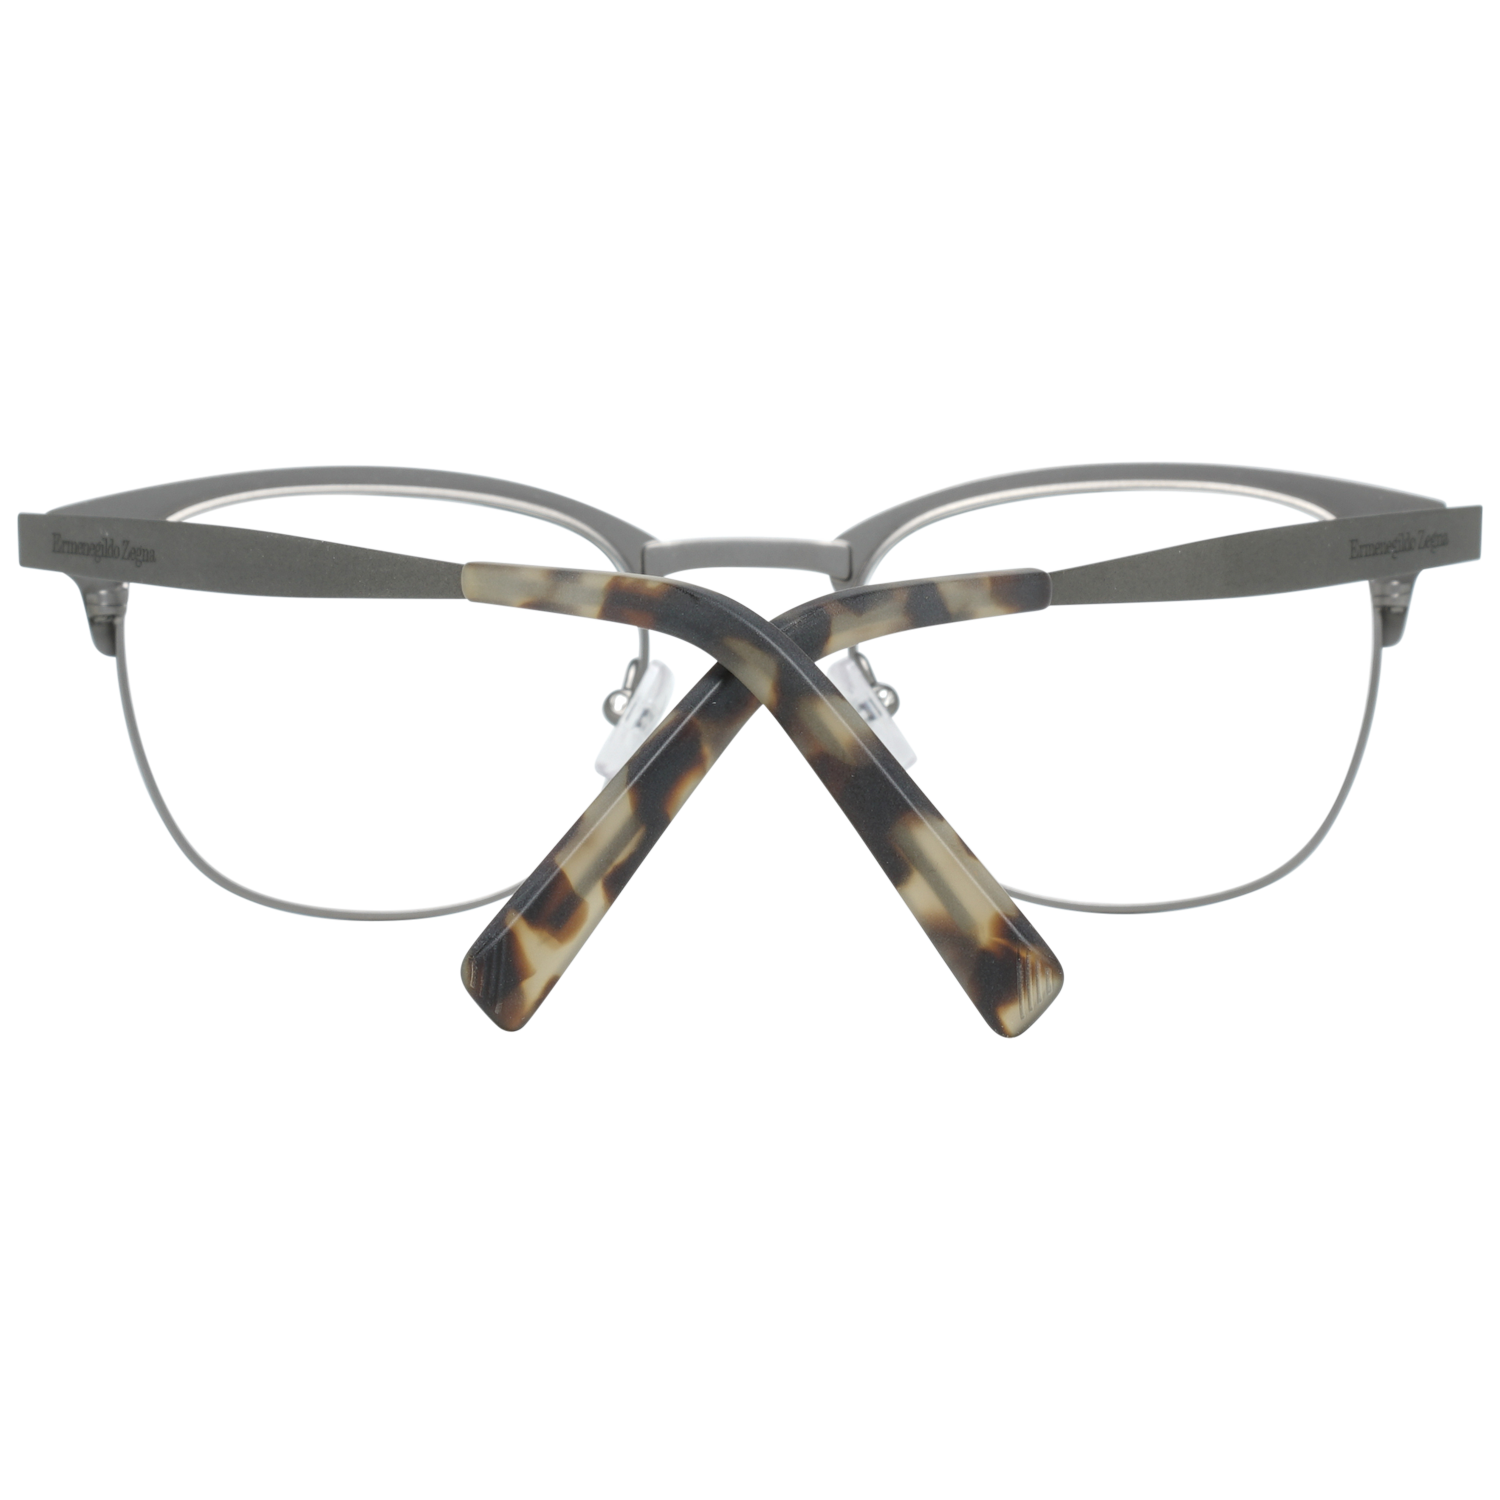 Ermenegildo Zegna Frames Ermenegildo Zegna Glasses Optical Frame EZ5099 097 50 Eyeglasses Eyewear UK USA Australia 